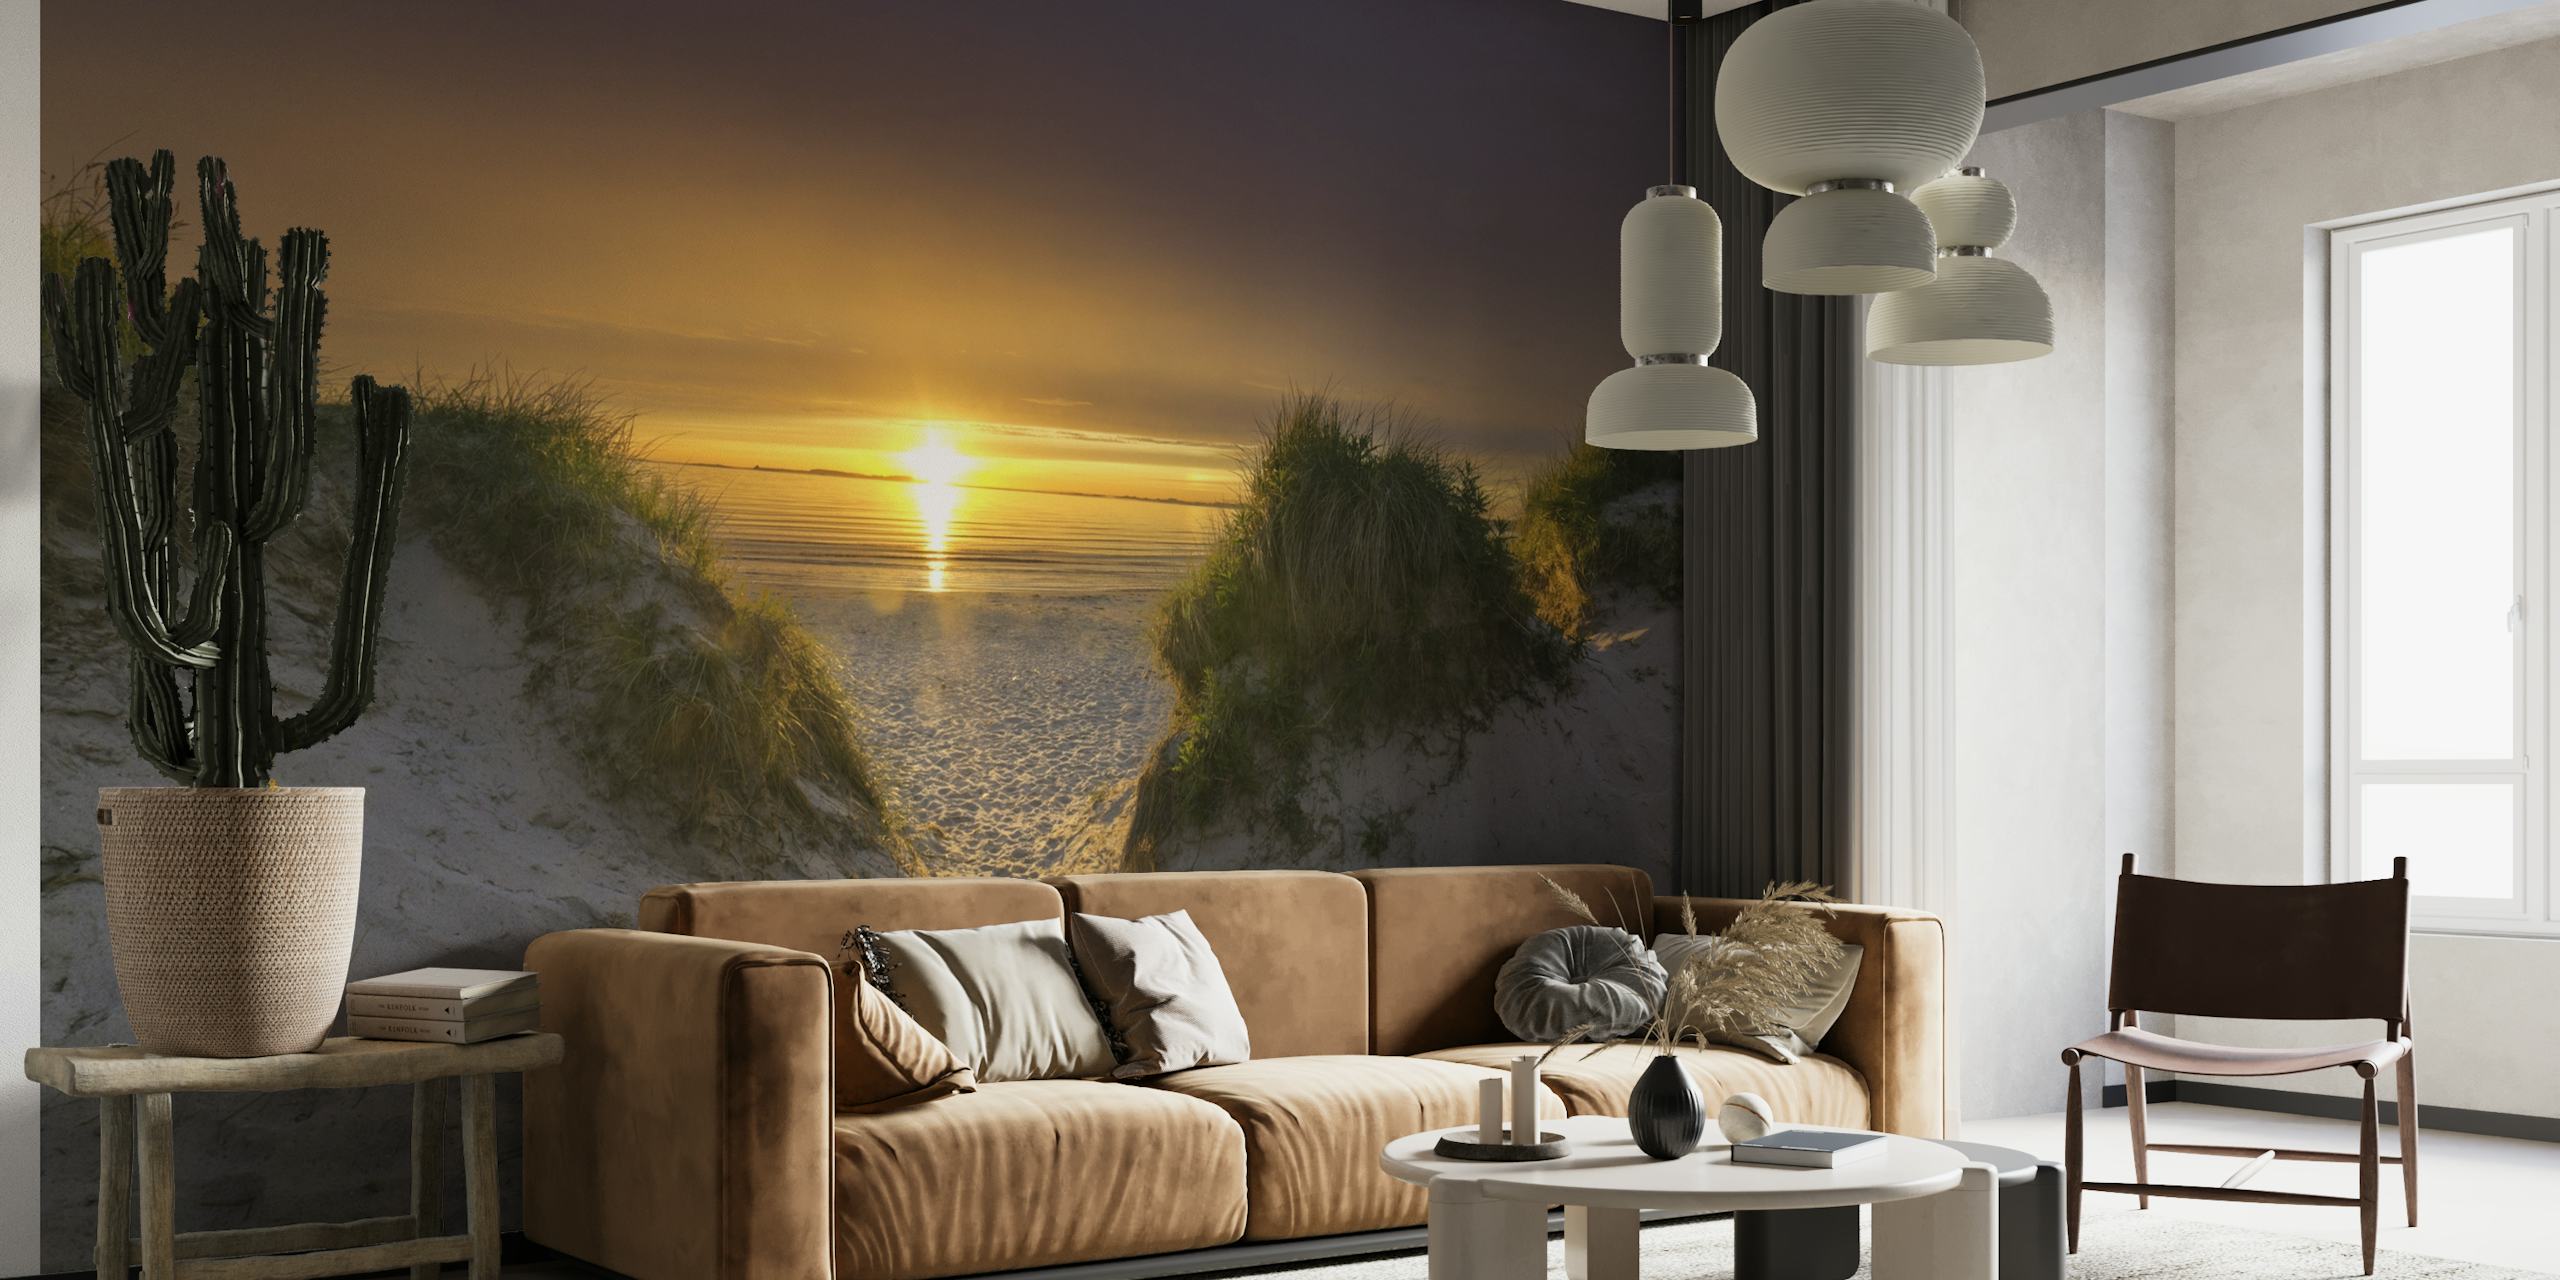 Auringonlaskun rantaseinämaalaus, jossa on hiekkatie, joka johtaa dyynien läpi mereen